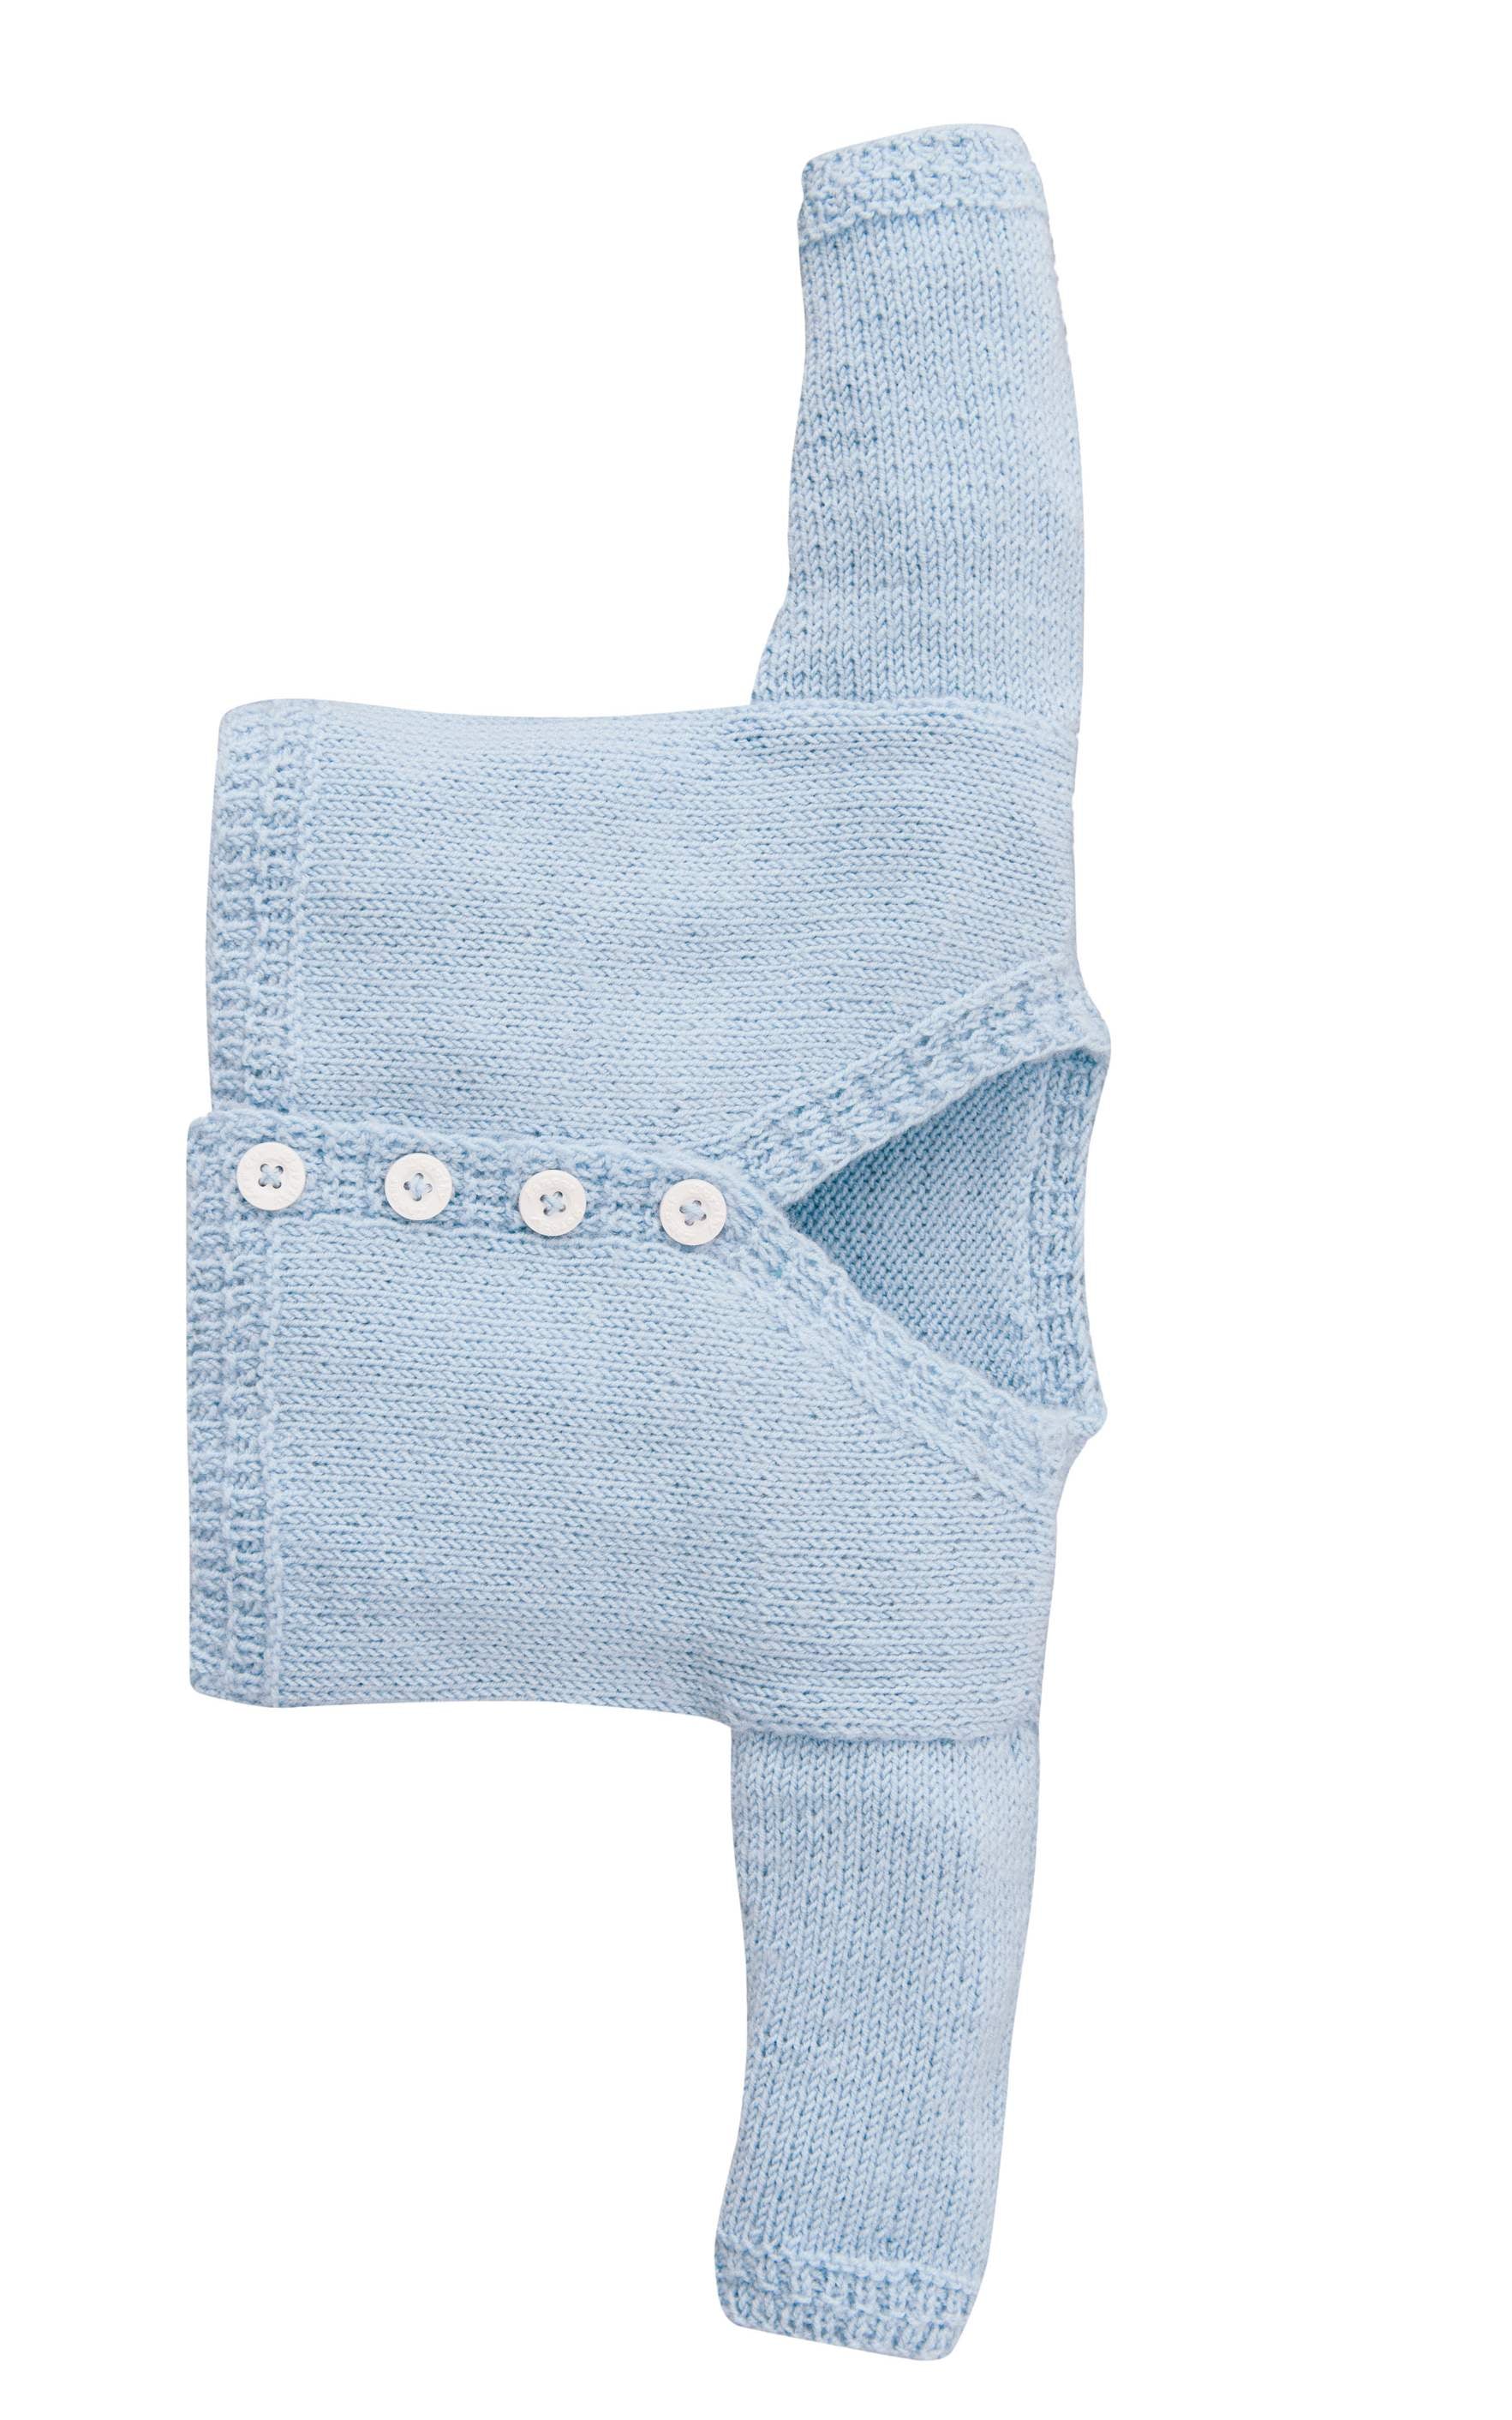 Baby Jacke, Pullunder, Hose und Söckchen - Strickset von LANA GROSSA jetzt online kaufen bei OONIQUE